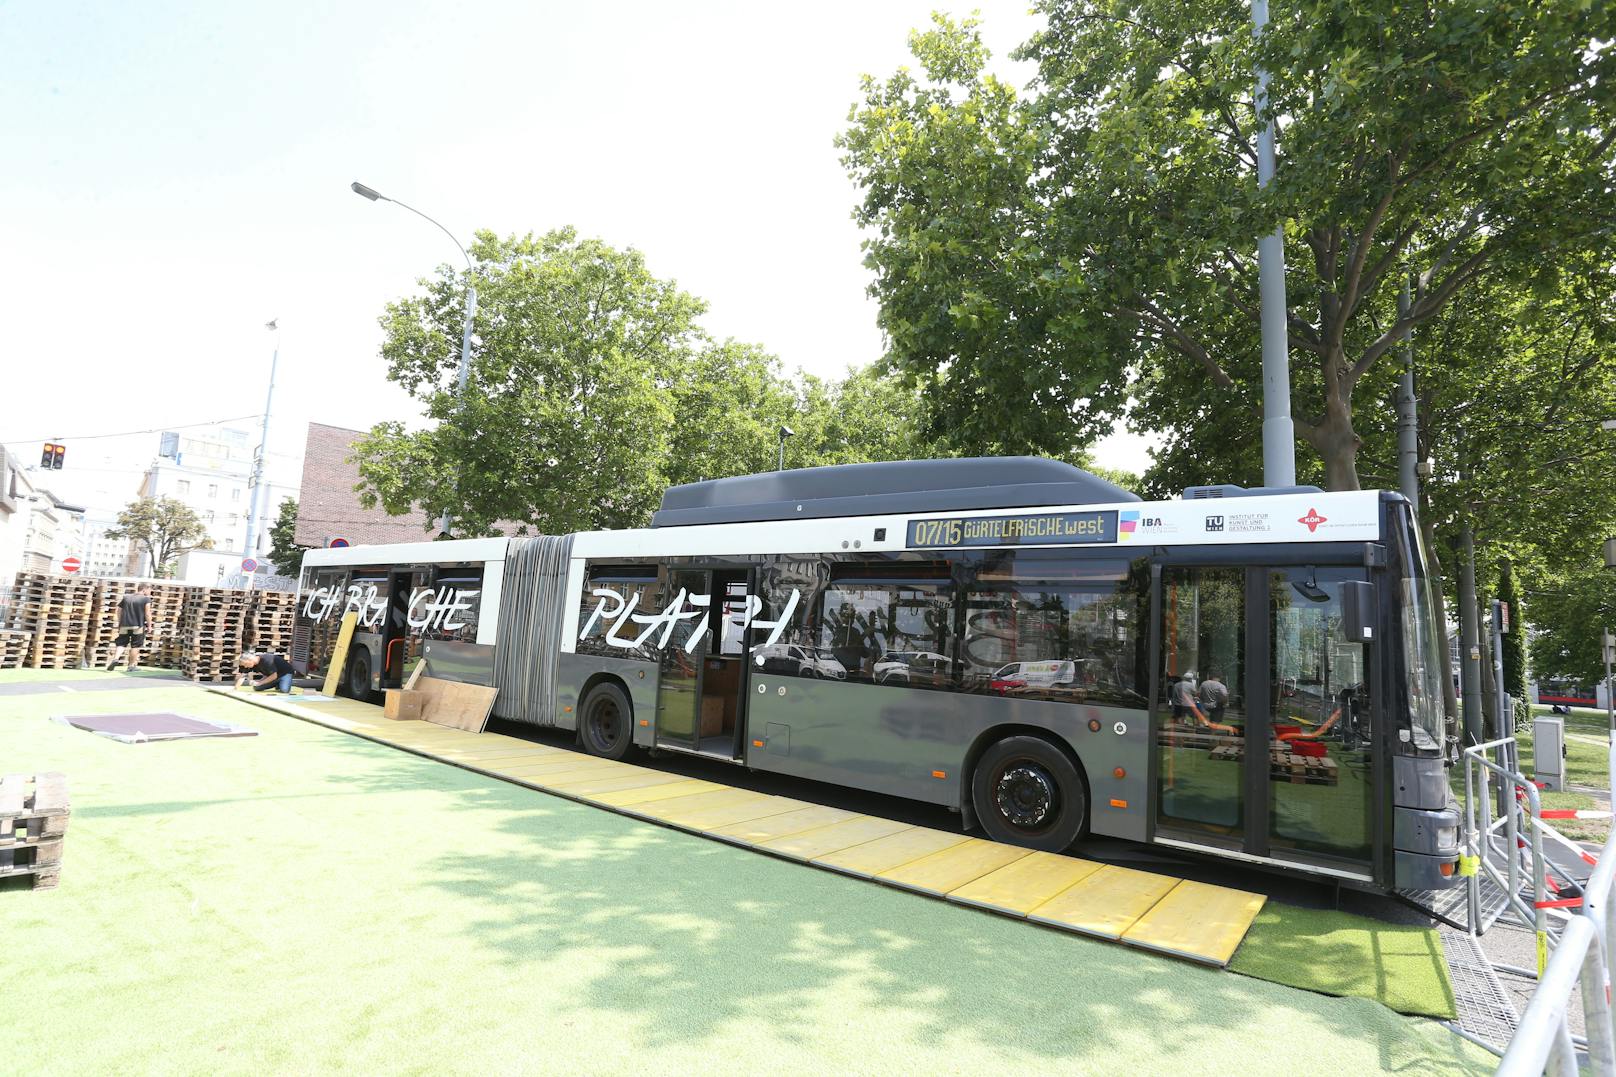 Im Buslabor "Ich brauch Platz" sind verschiedene Workshops zum Thema Thema Raum und Stadt geplant. Wer will kann nach Voranmeldung auch im Bus übernachten und den Gürtel so "hautnah" erleben.